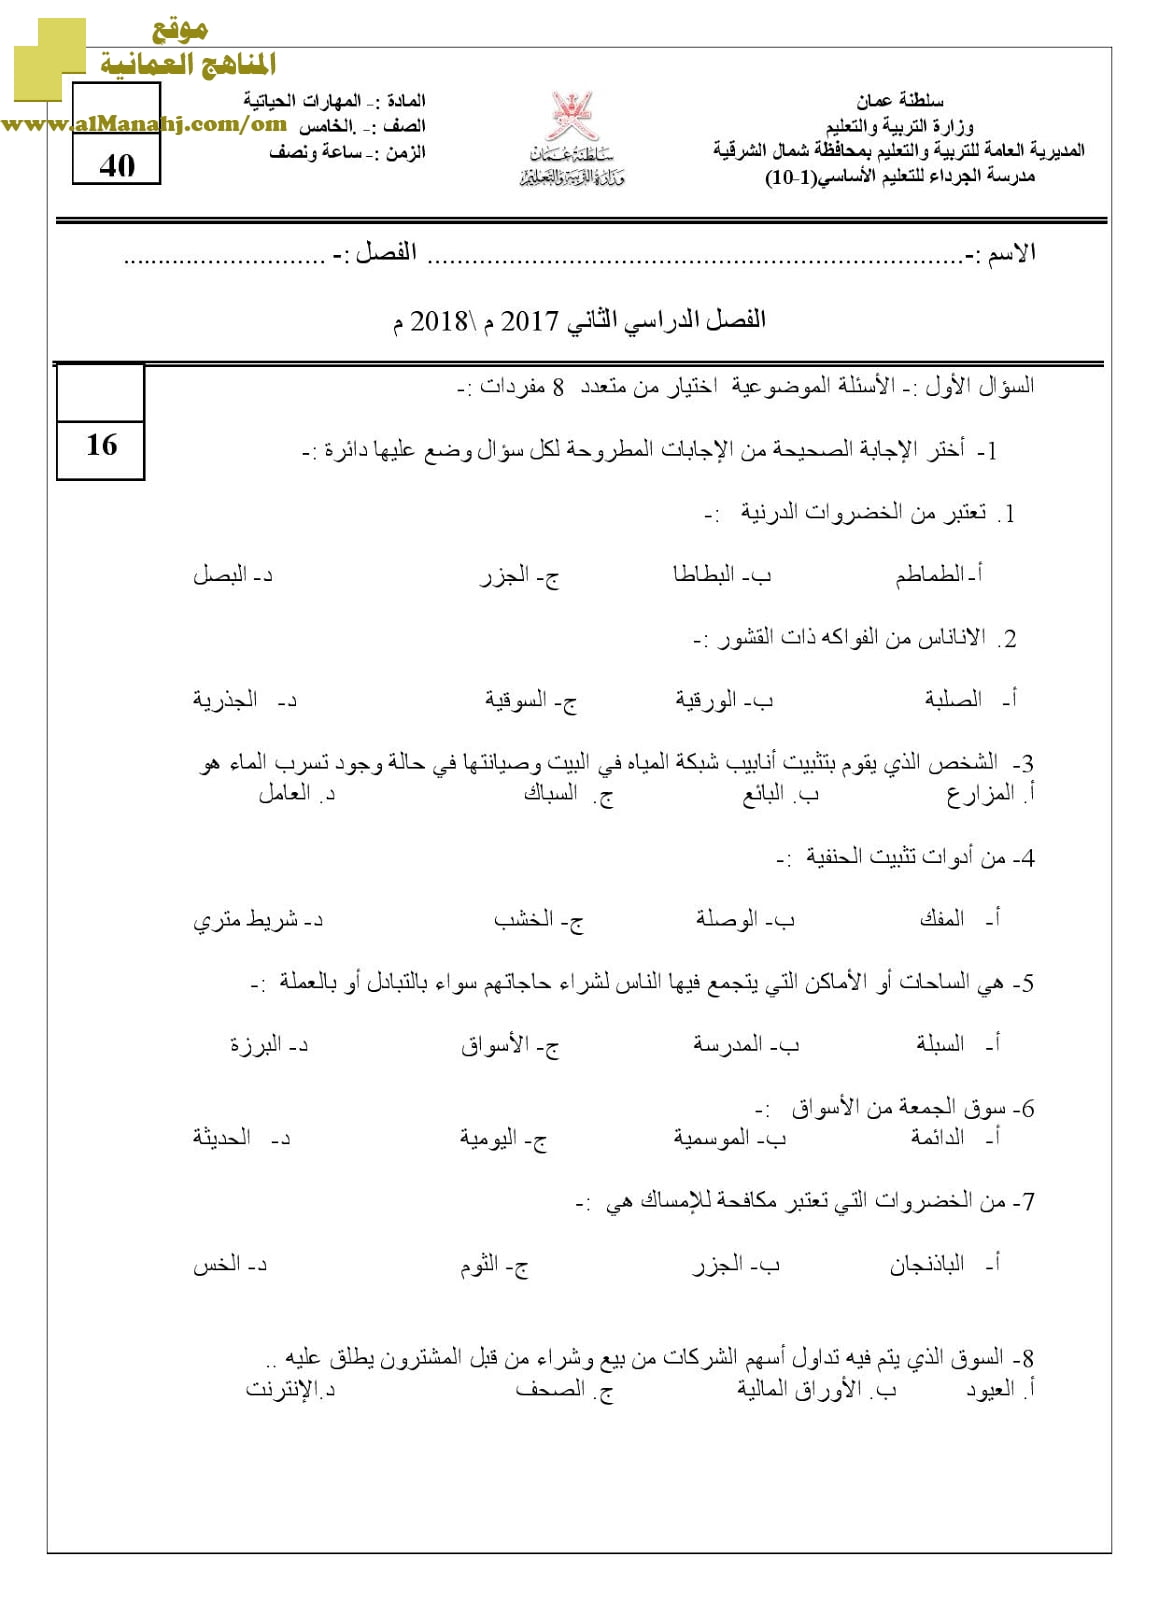 أسئلة الامتحان الرسمية في محافظة شمال الشرقية للفصل الدراسي الثاني الدور الأول (مهارات حياتية) الخامس